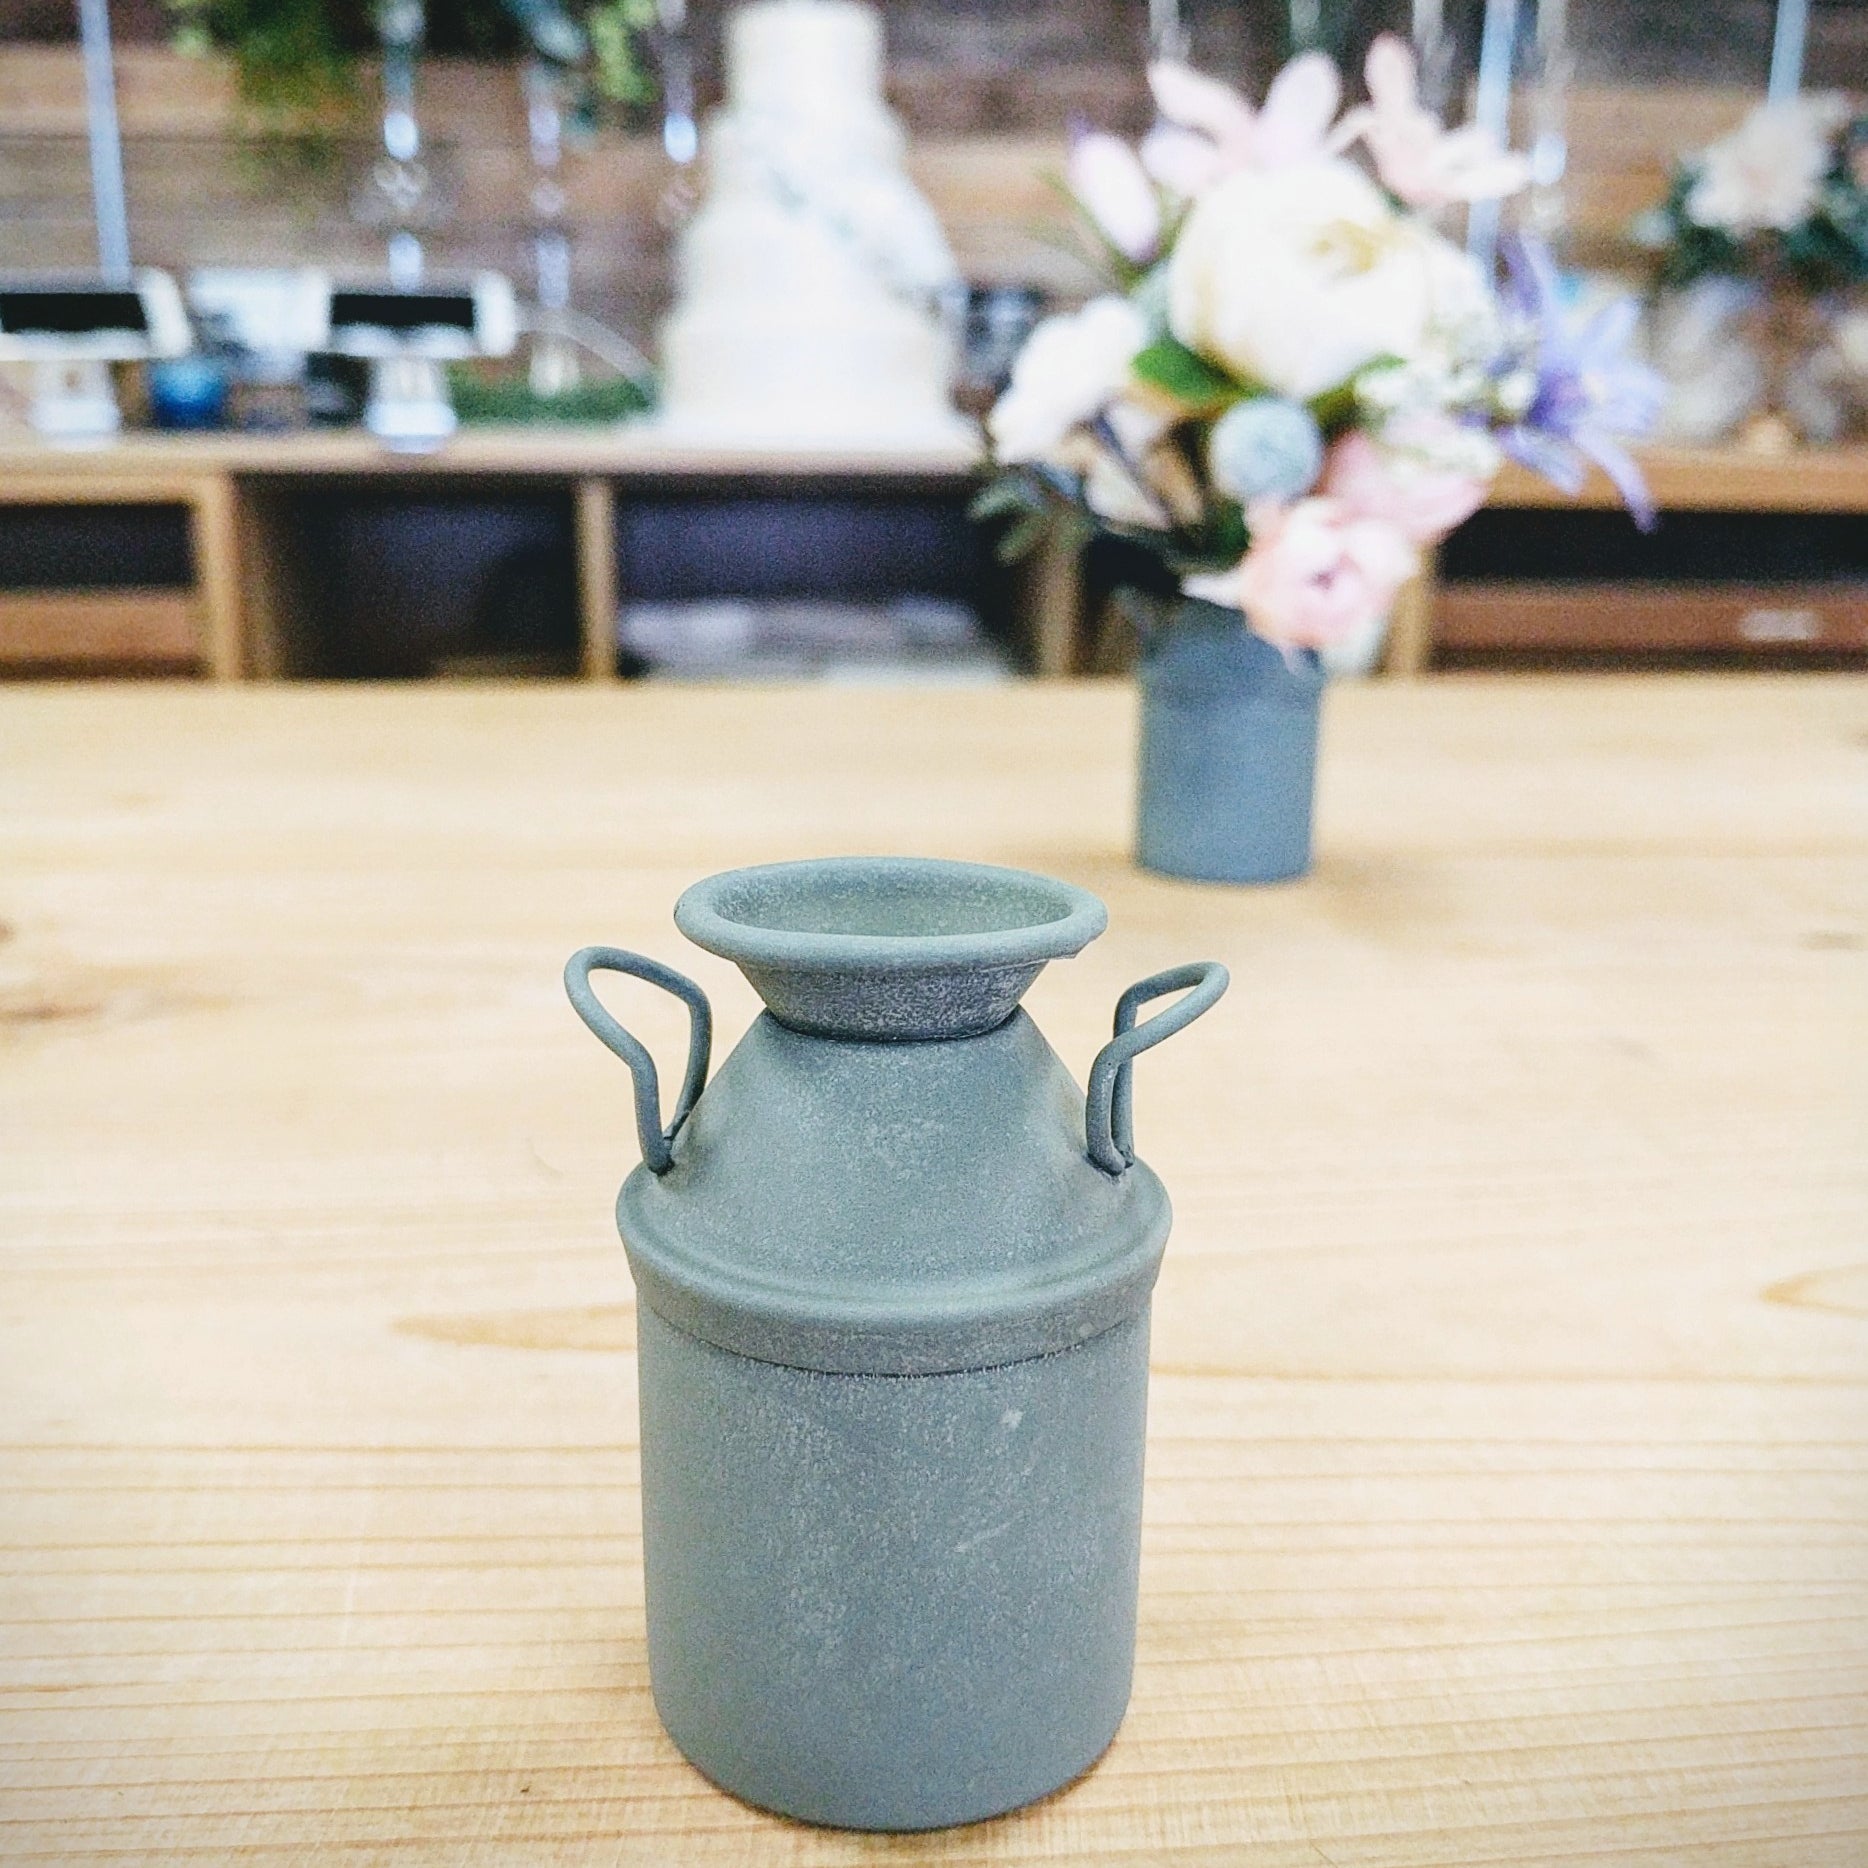 Mini Milk Jug Bud Vases - The Wedding Shop